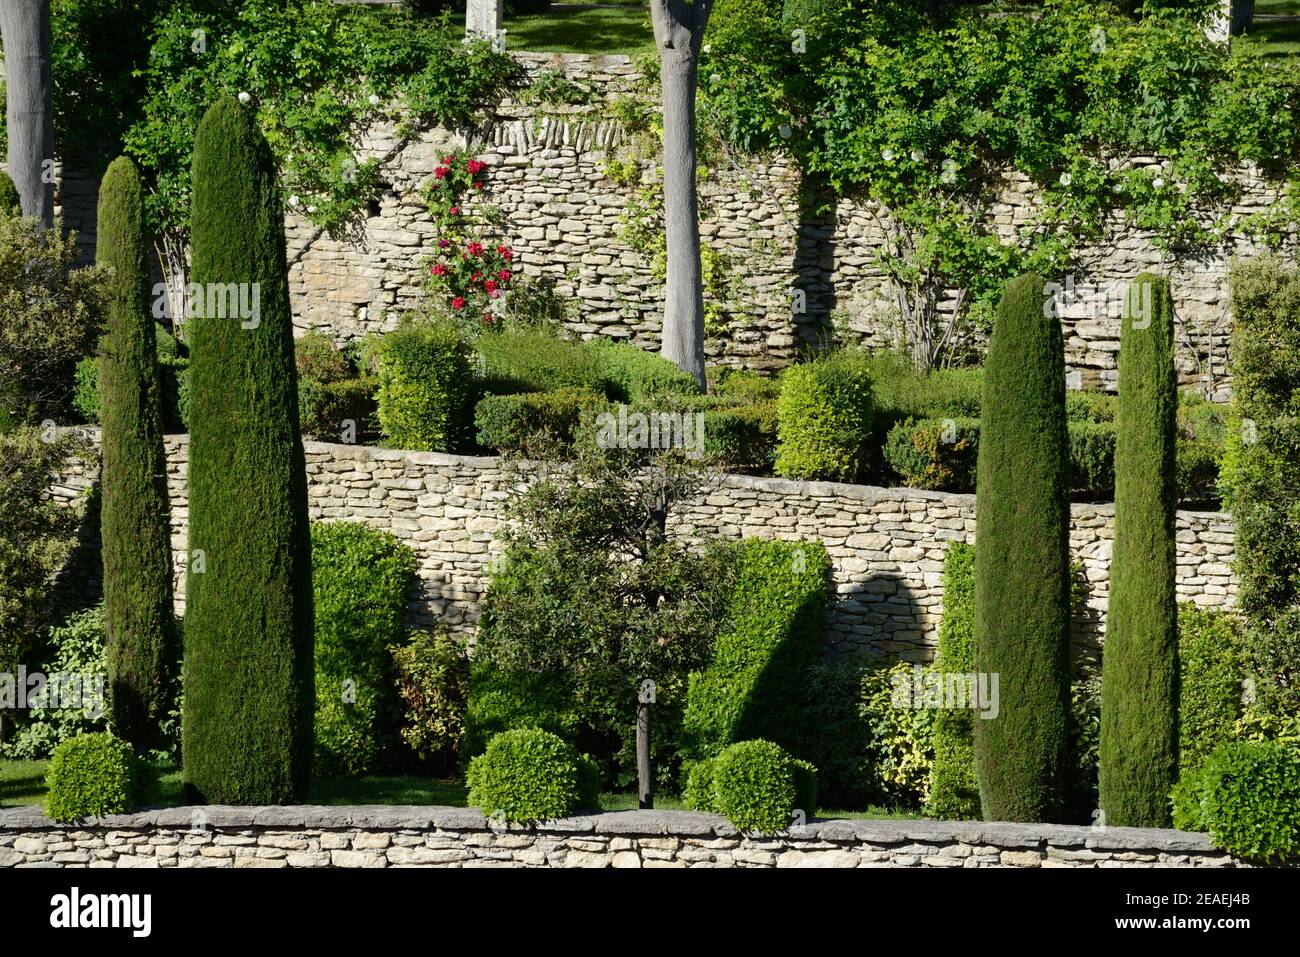 Jardins en terrasse avec murs en pierre sèche, arbustes topiaires ou arbustes taillés et cyprès méditerranéens Gordes Luberon Provence France Banque D'Images